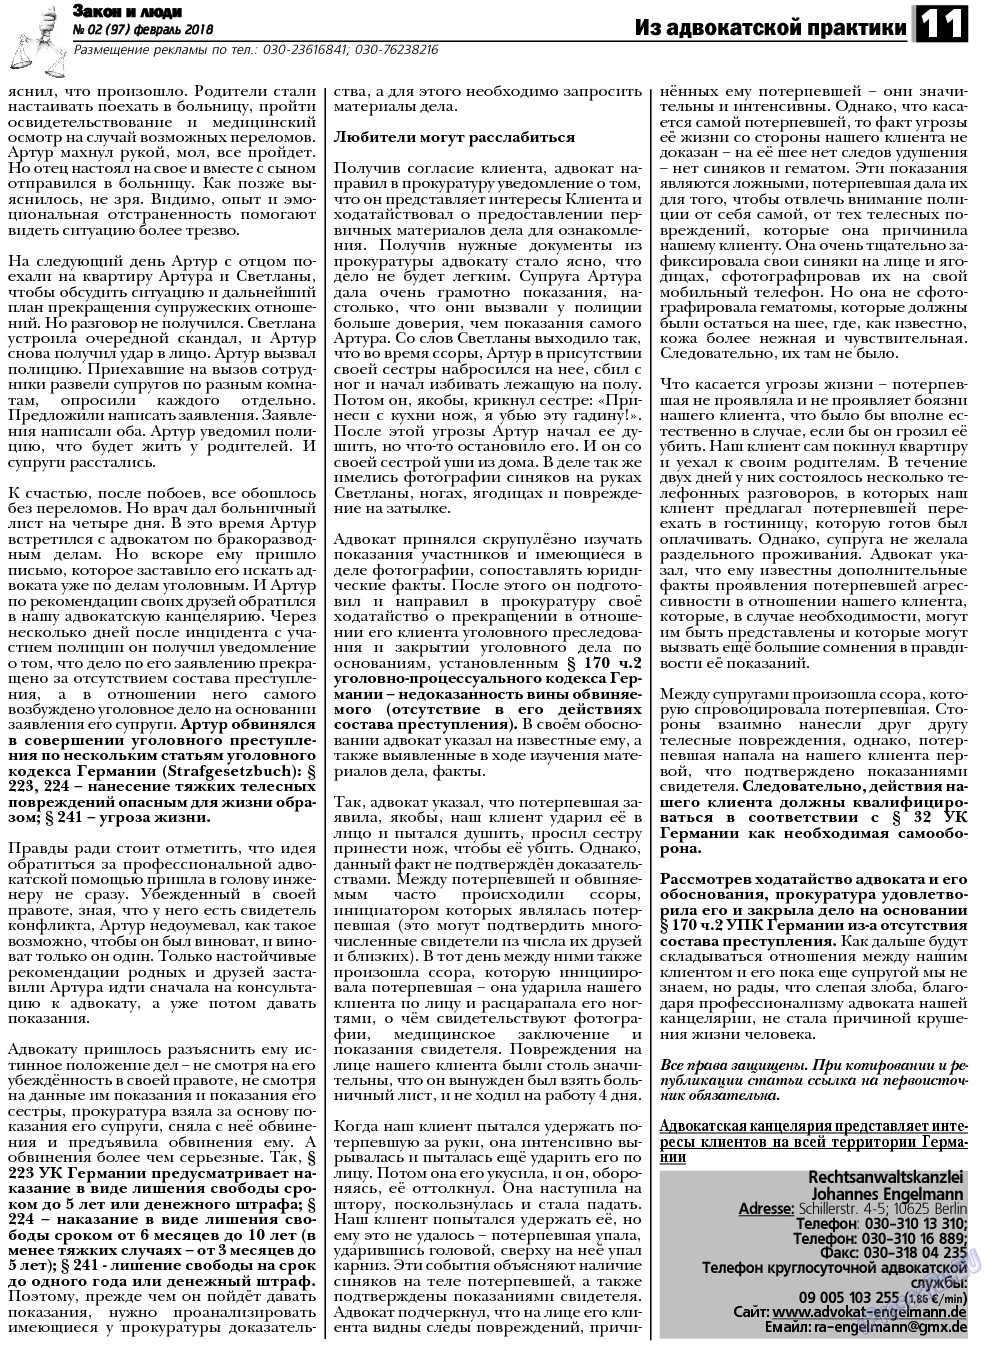 Закон и люди, газета. 2018 №2 стр.11